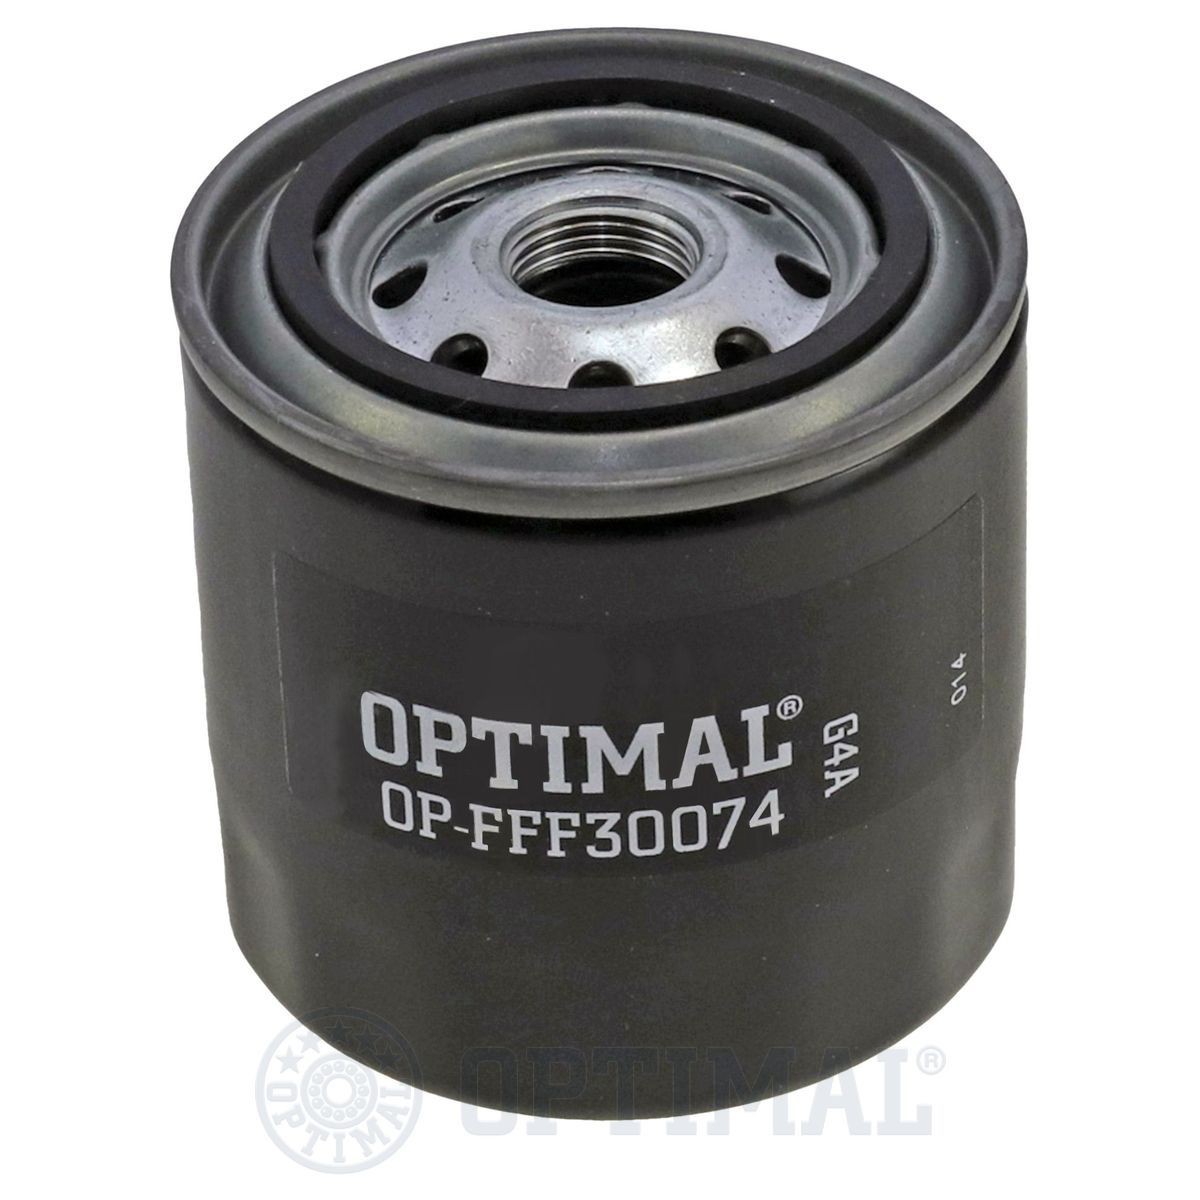 OPTIMAL OP-FFF30074 Fuel filter 89414-34790